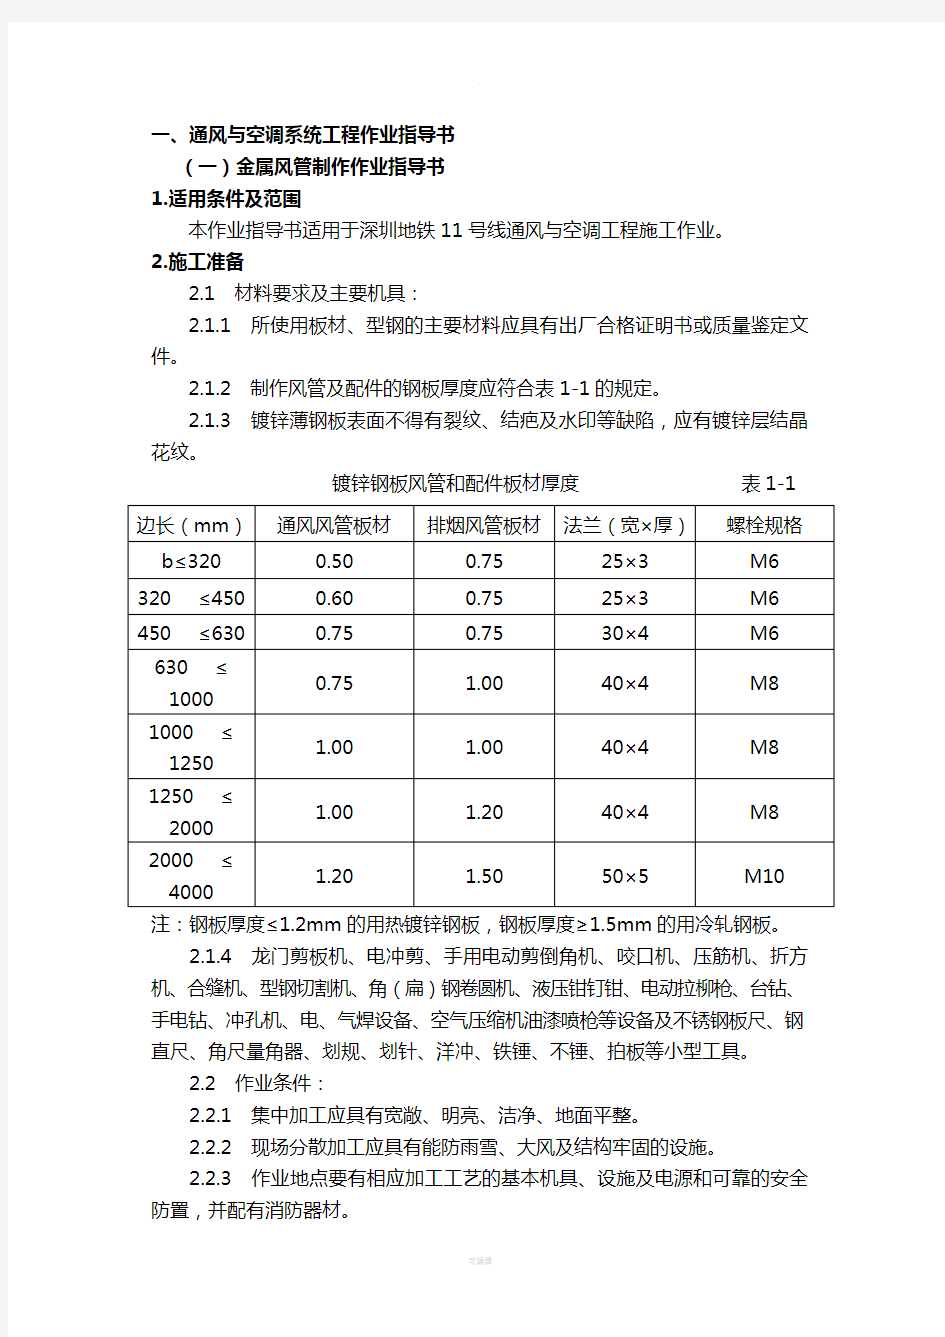 深圳地铁11号线11403标作业指导书(机电安装)